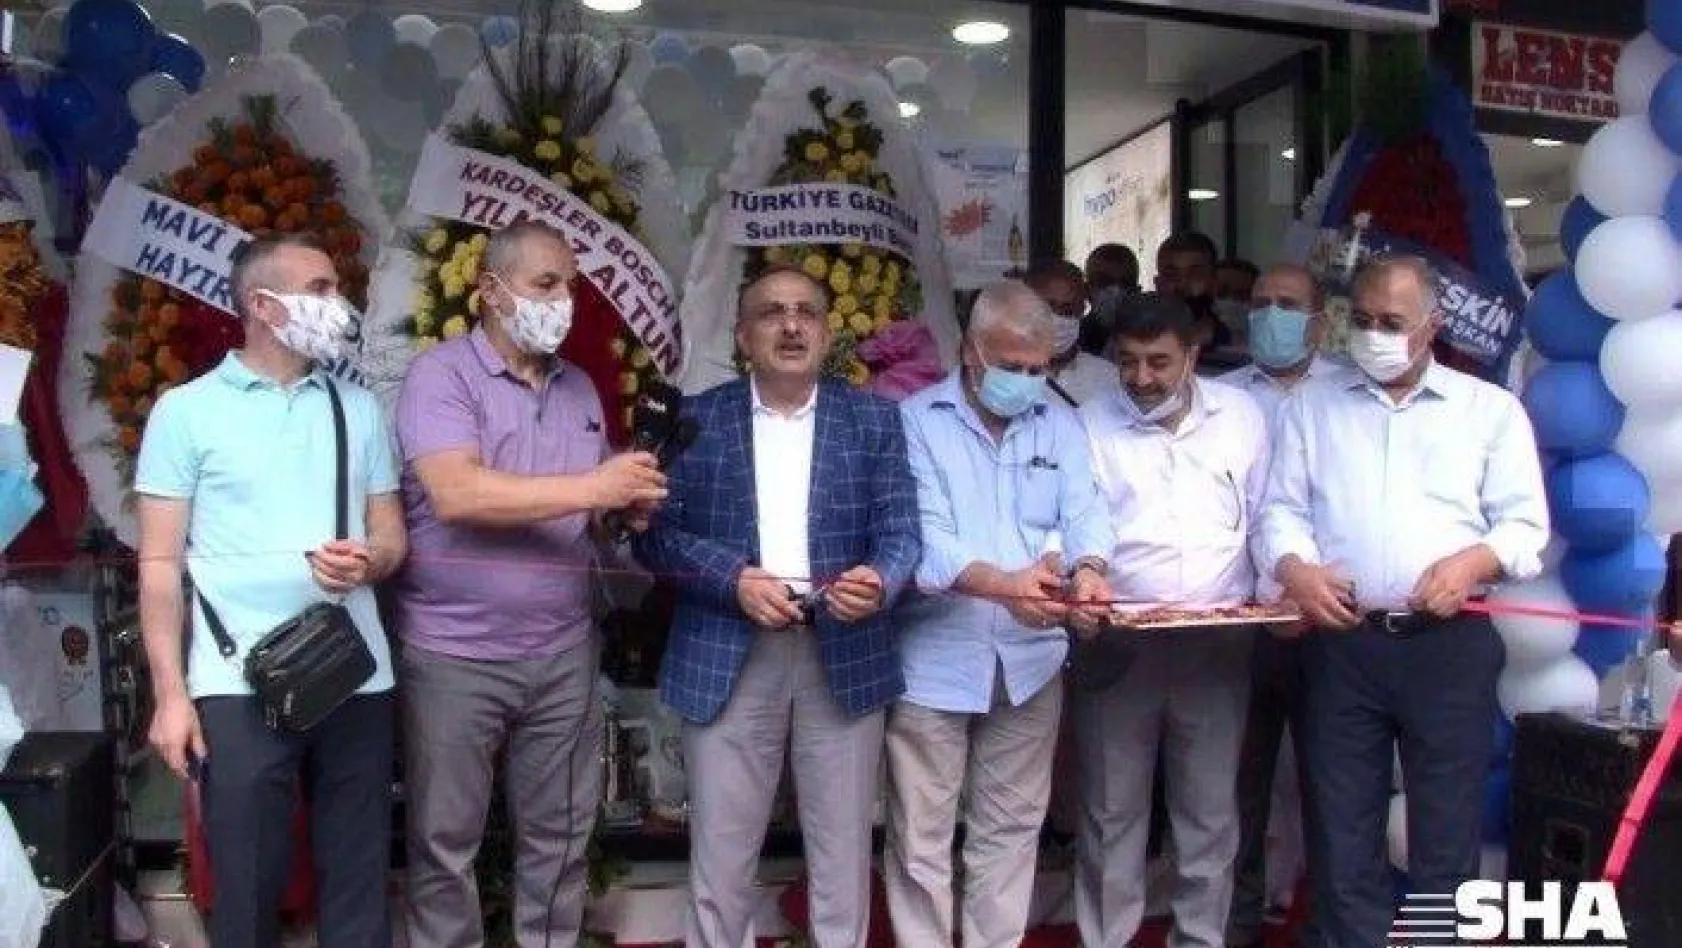 İhlas Mağazası Sultanbeyli Şubesi törenle açıldı